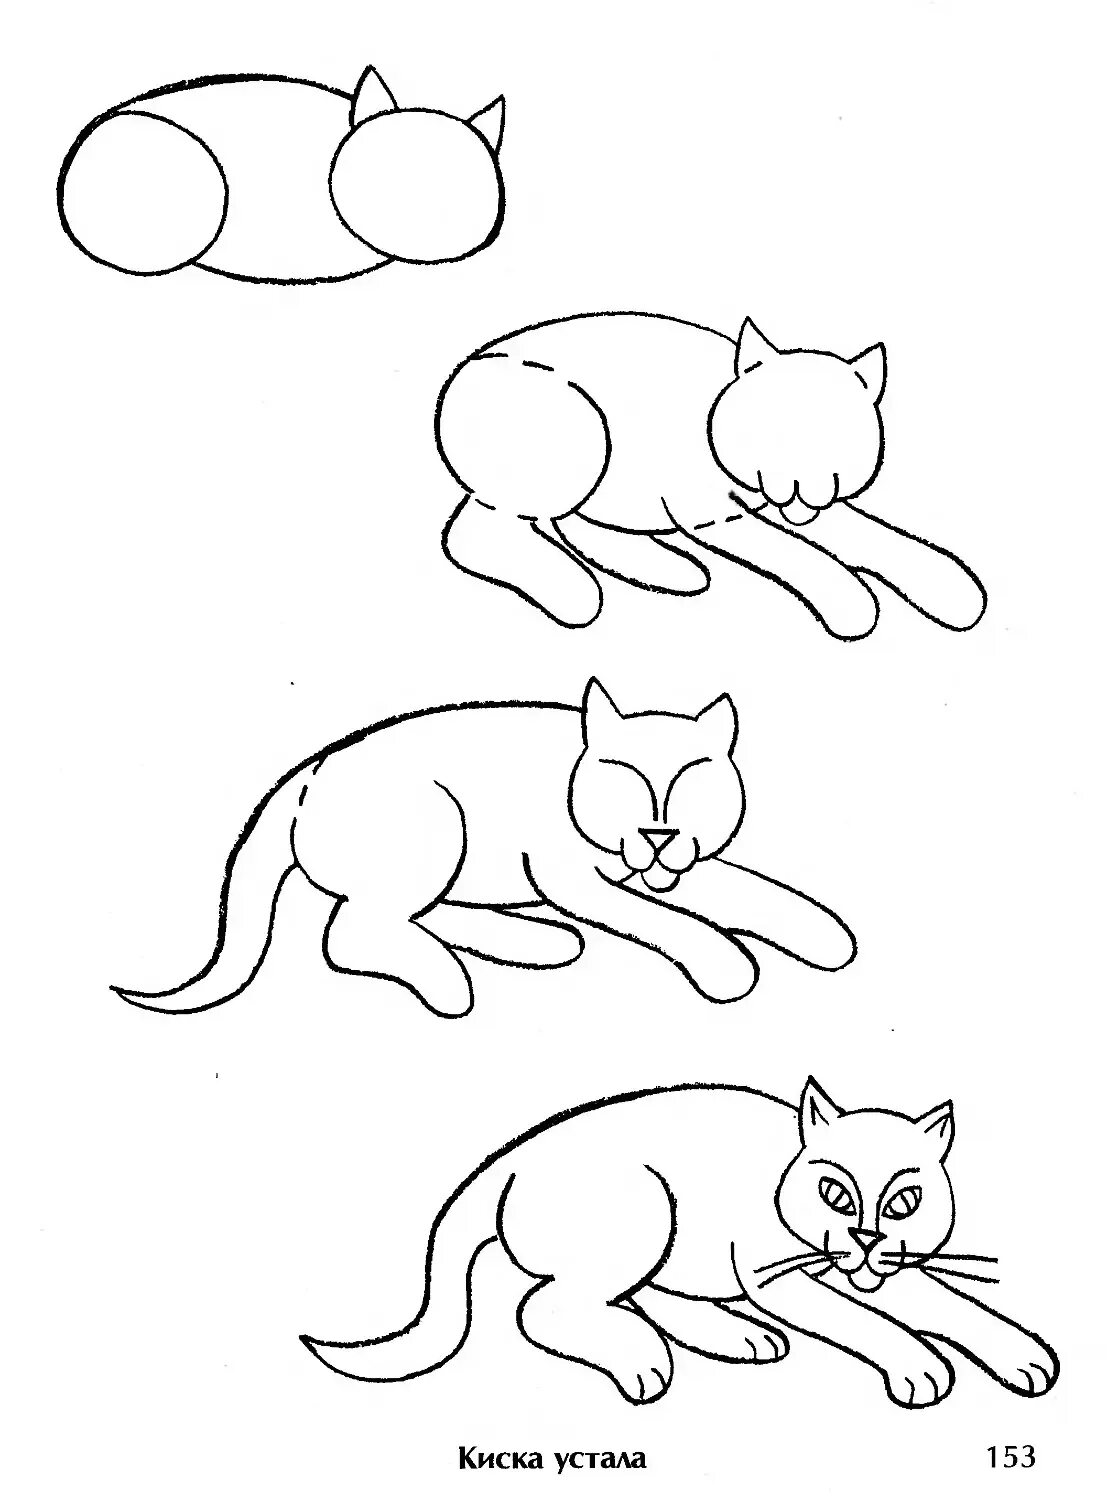 Схема рисования кошки для дошкольников. Поэтапное рисование кошки. Кошка для рисования для детей. Поэтапное рисование кошки карандашом. Нарисовать кошку поэтапно для детей